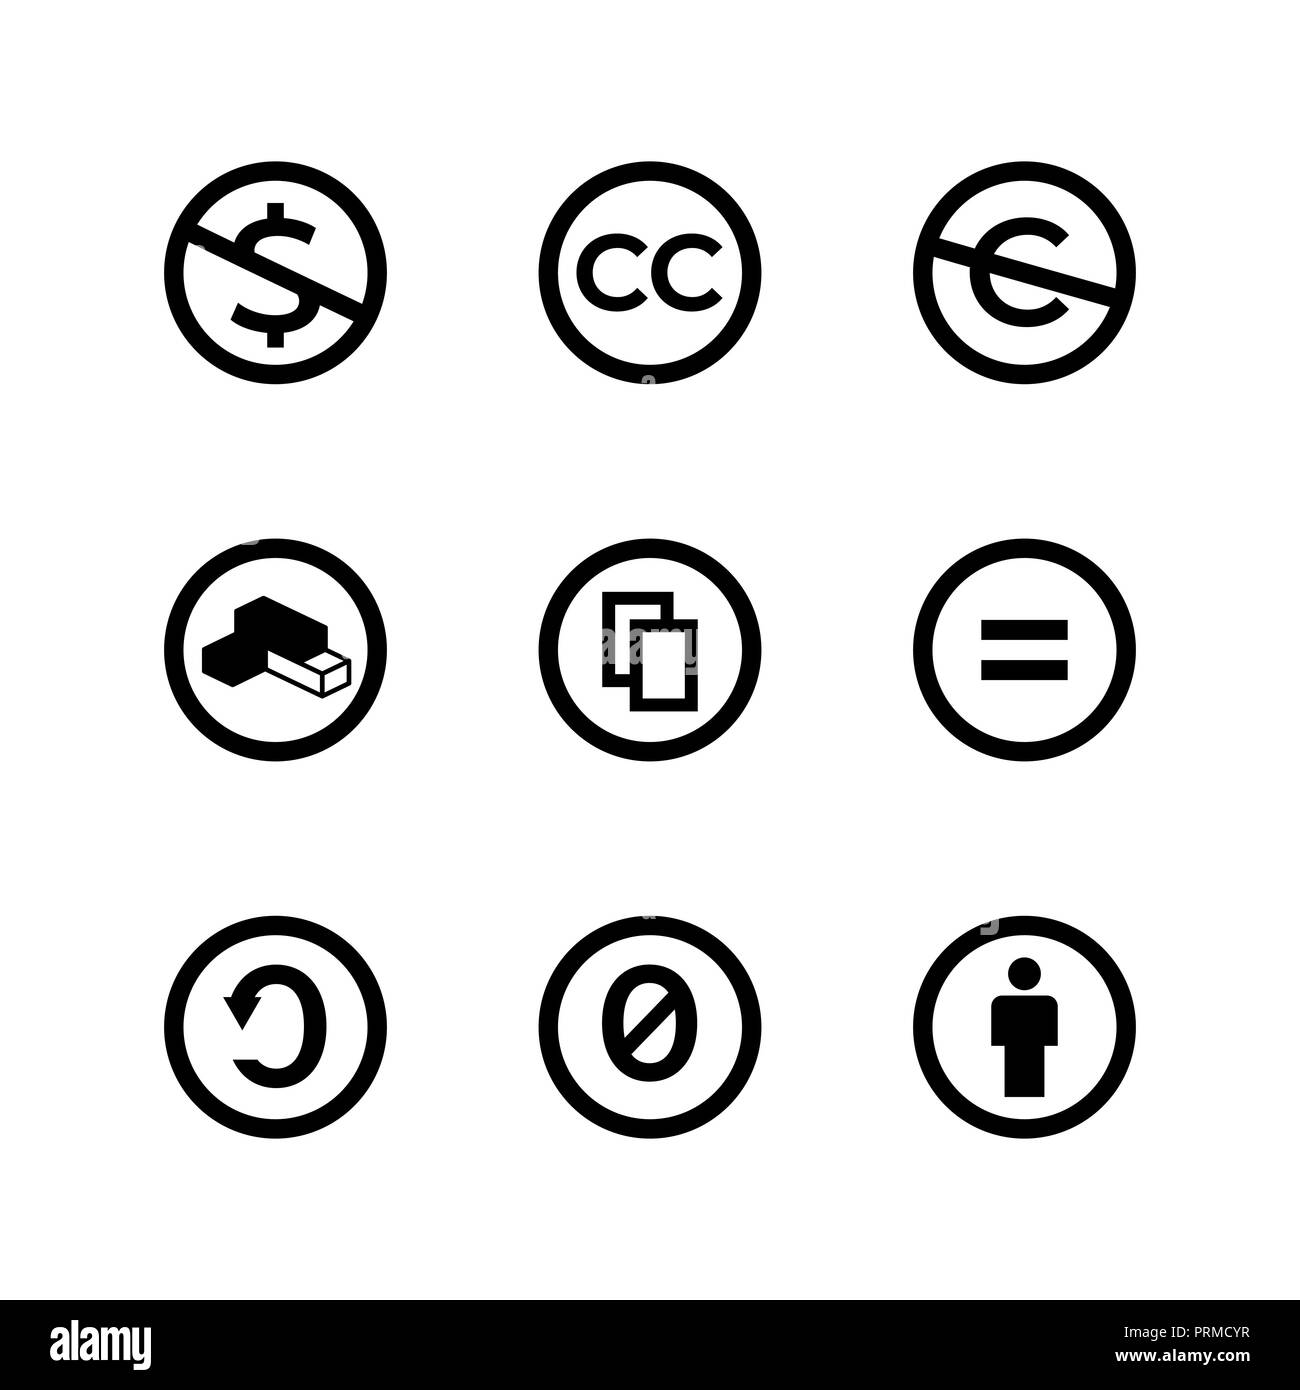 Creative Commons License público del derecho de autor, marcas e iconos Ilustración del Vector